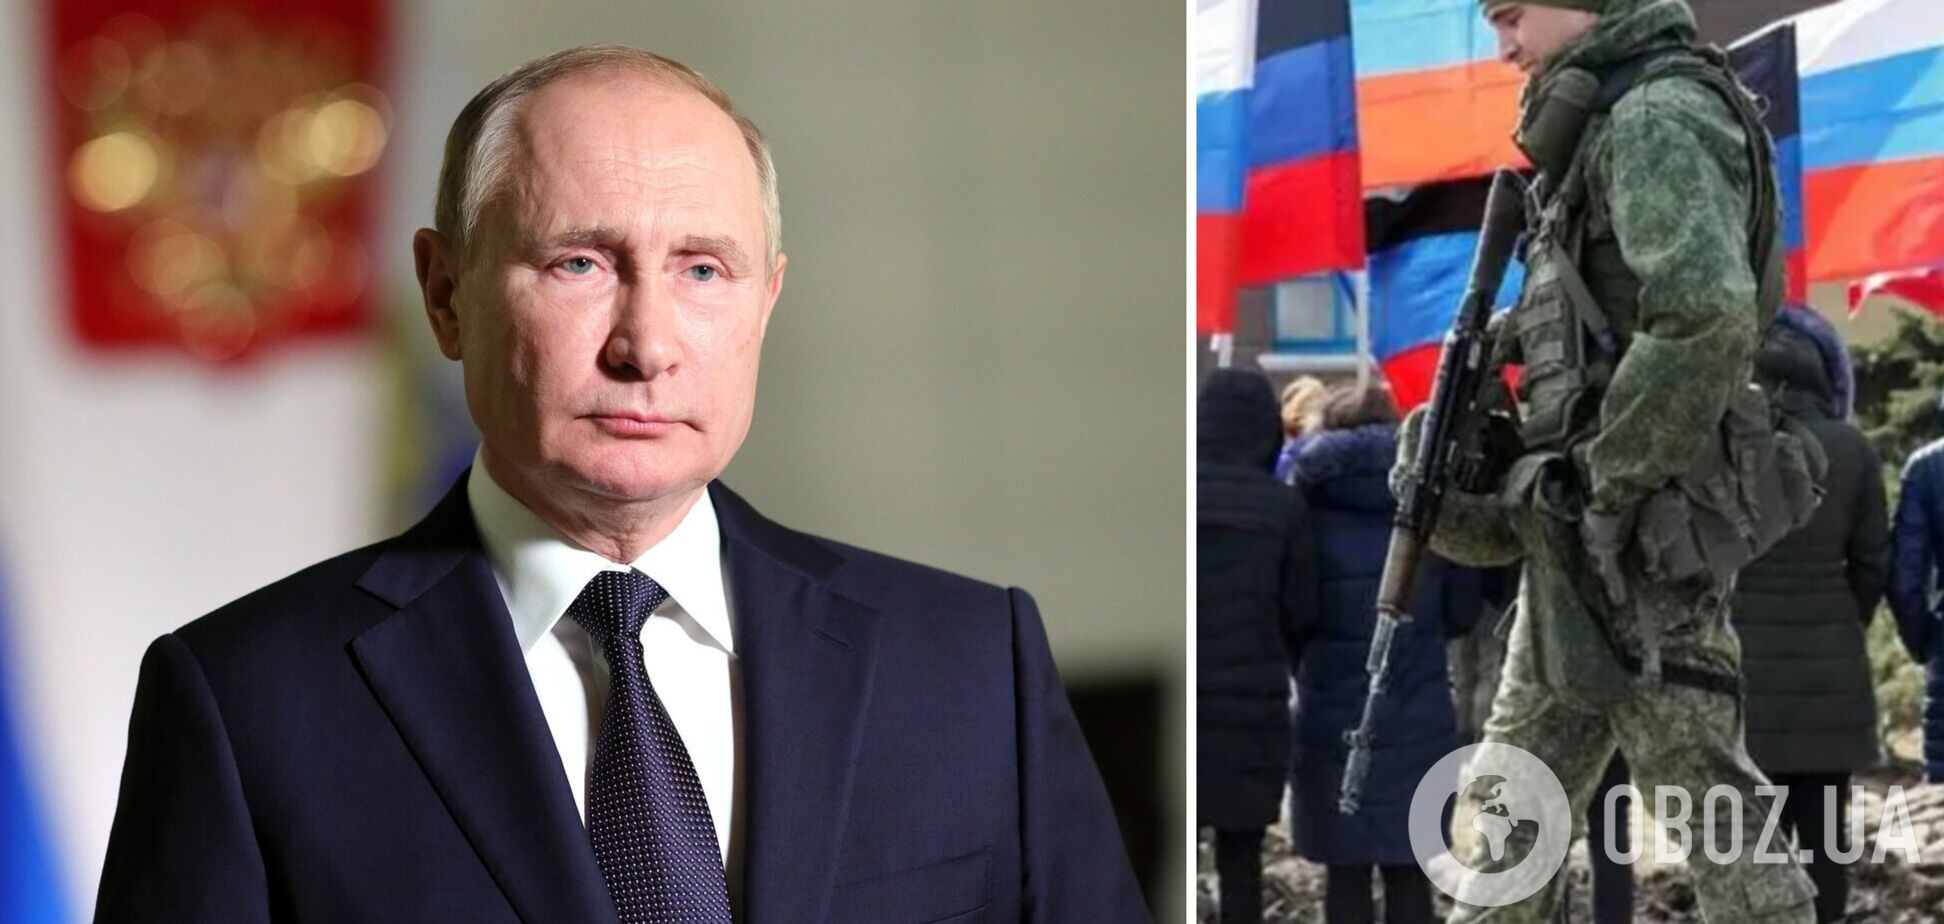 'Сделаем все': Путин объявил о проведении 'референдумов' на оккупированных территориях Украины